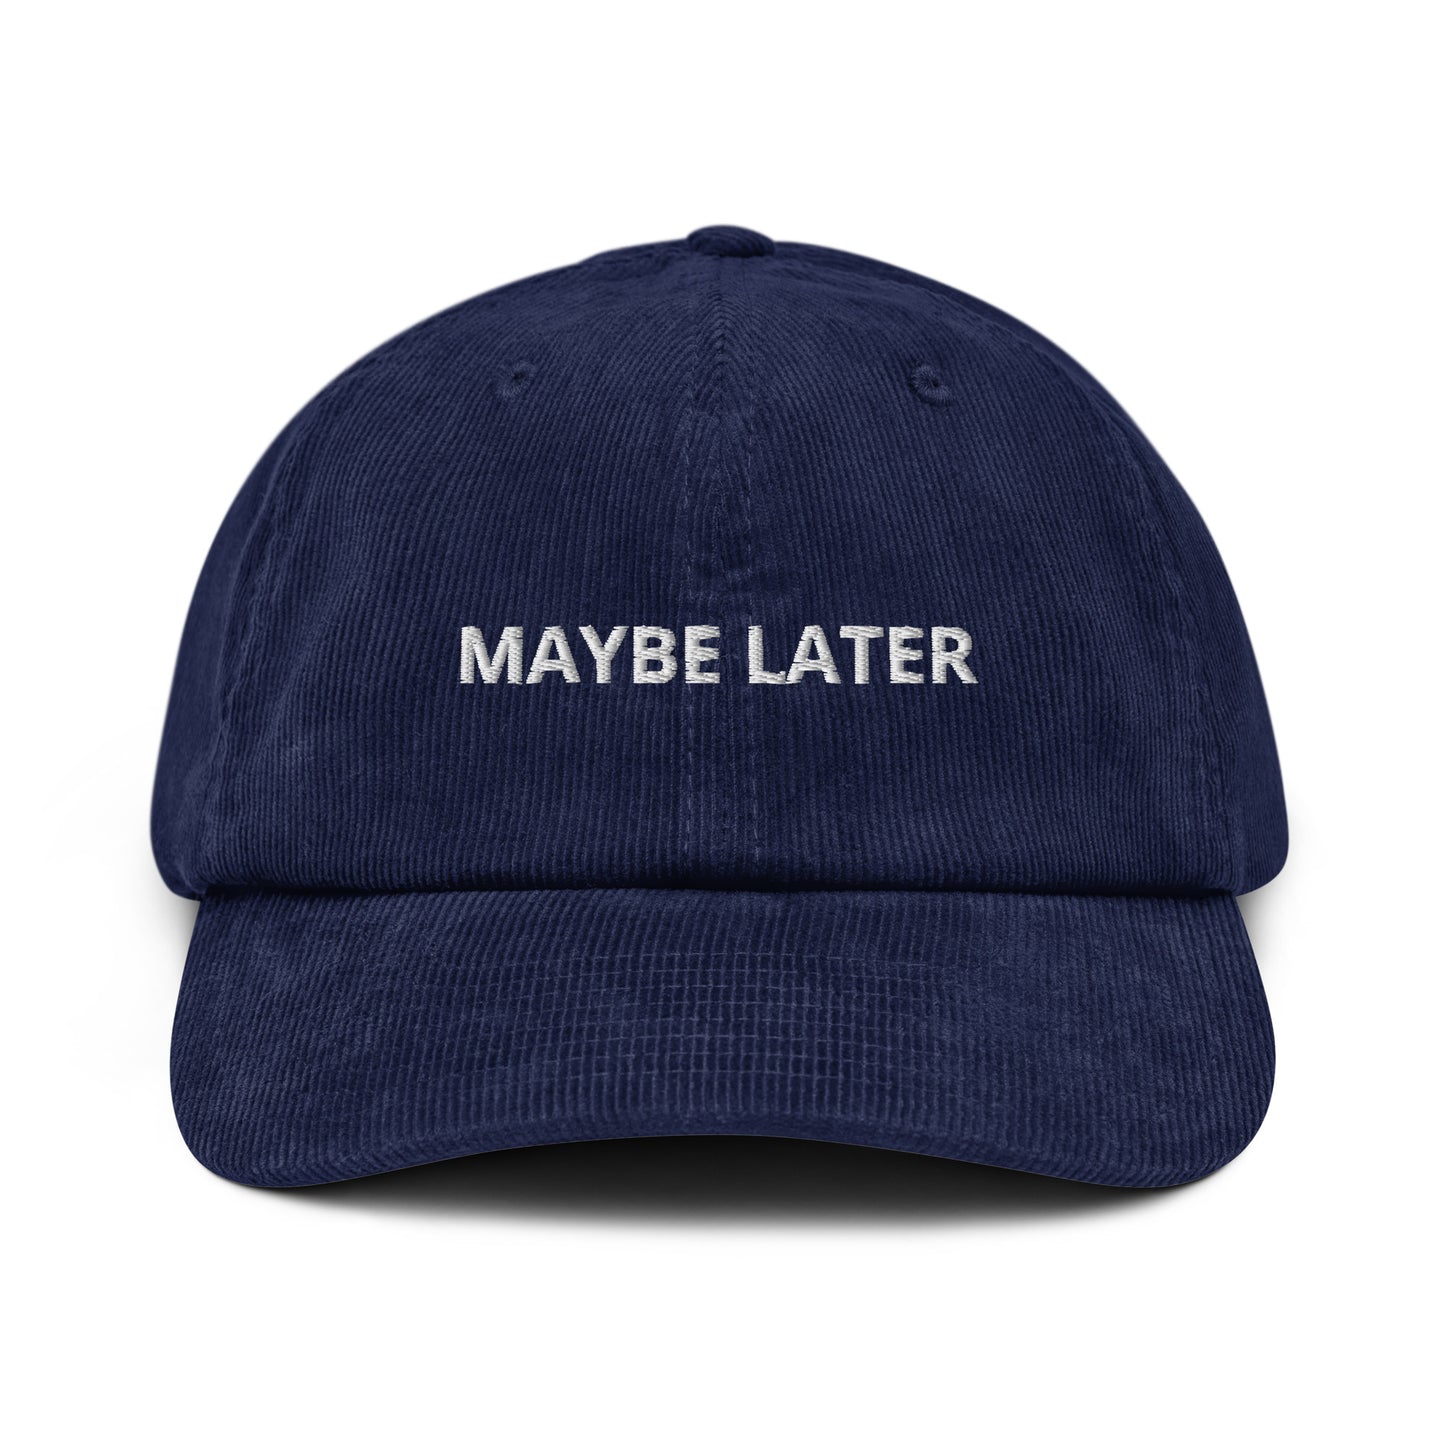 Maybe Later Cord-Cap mit weichem Stoff und Aufdruck 'Maybe Later' - Accessoire zum Aufschieben und Träumen